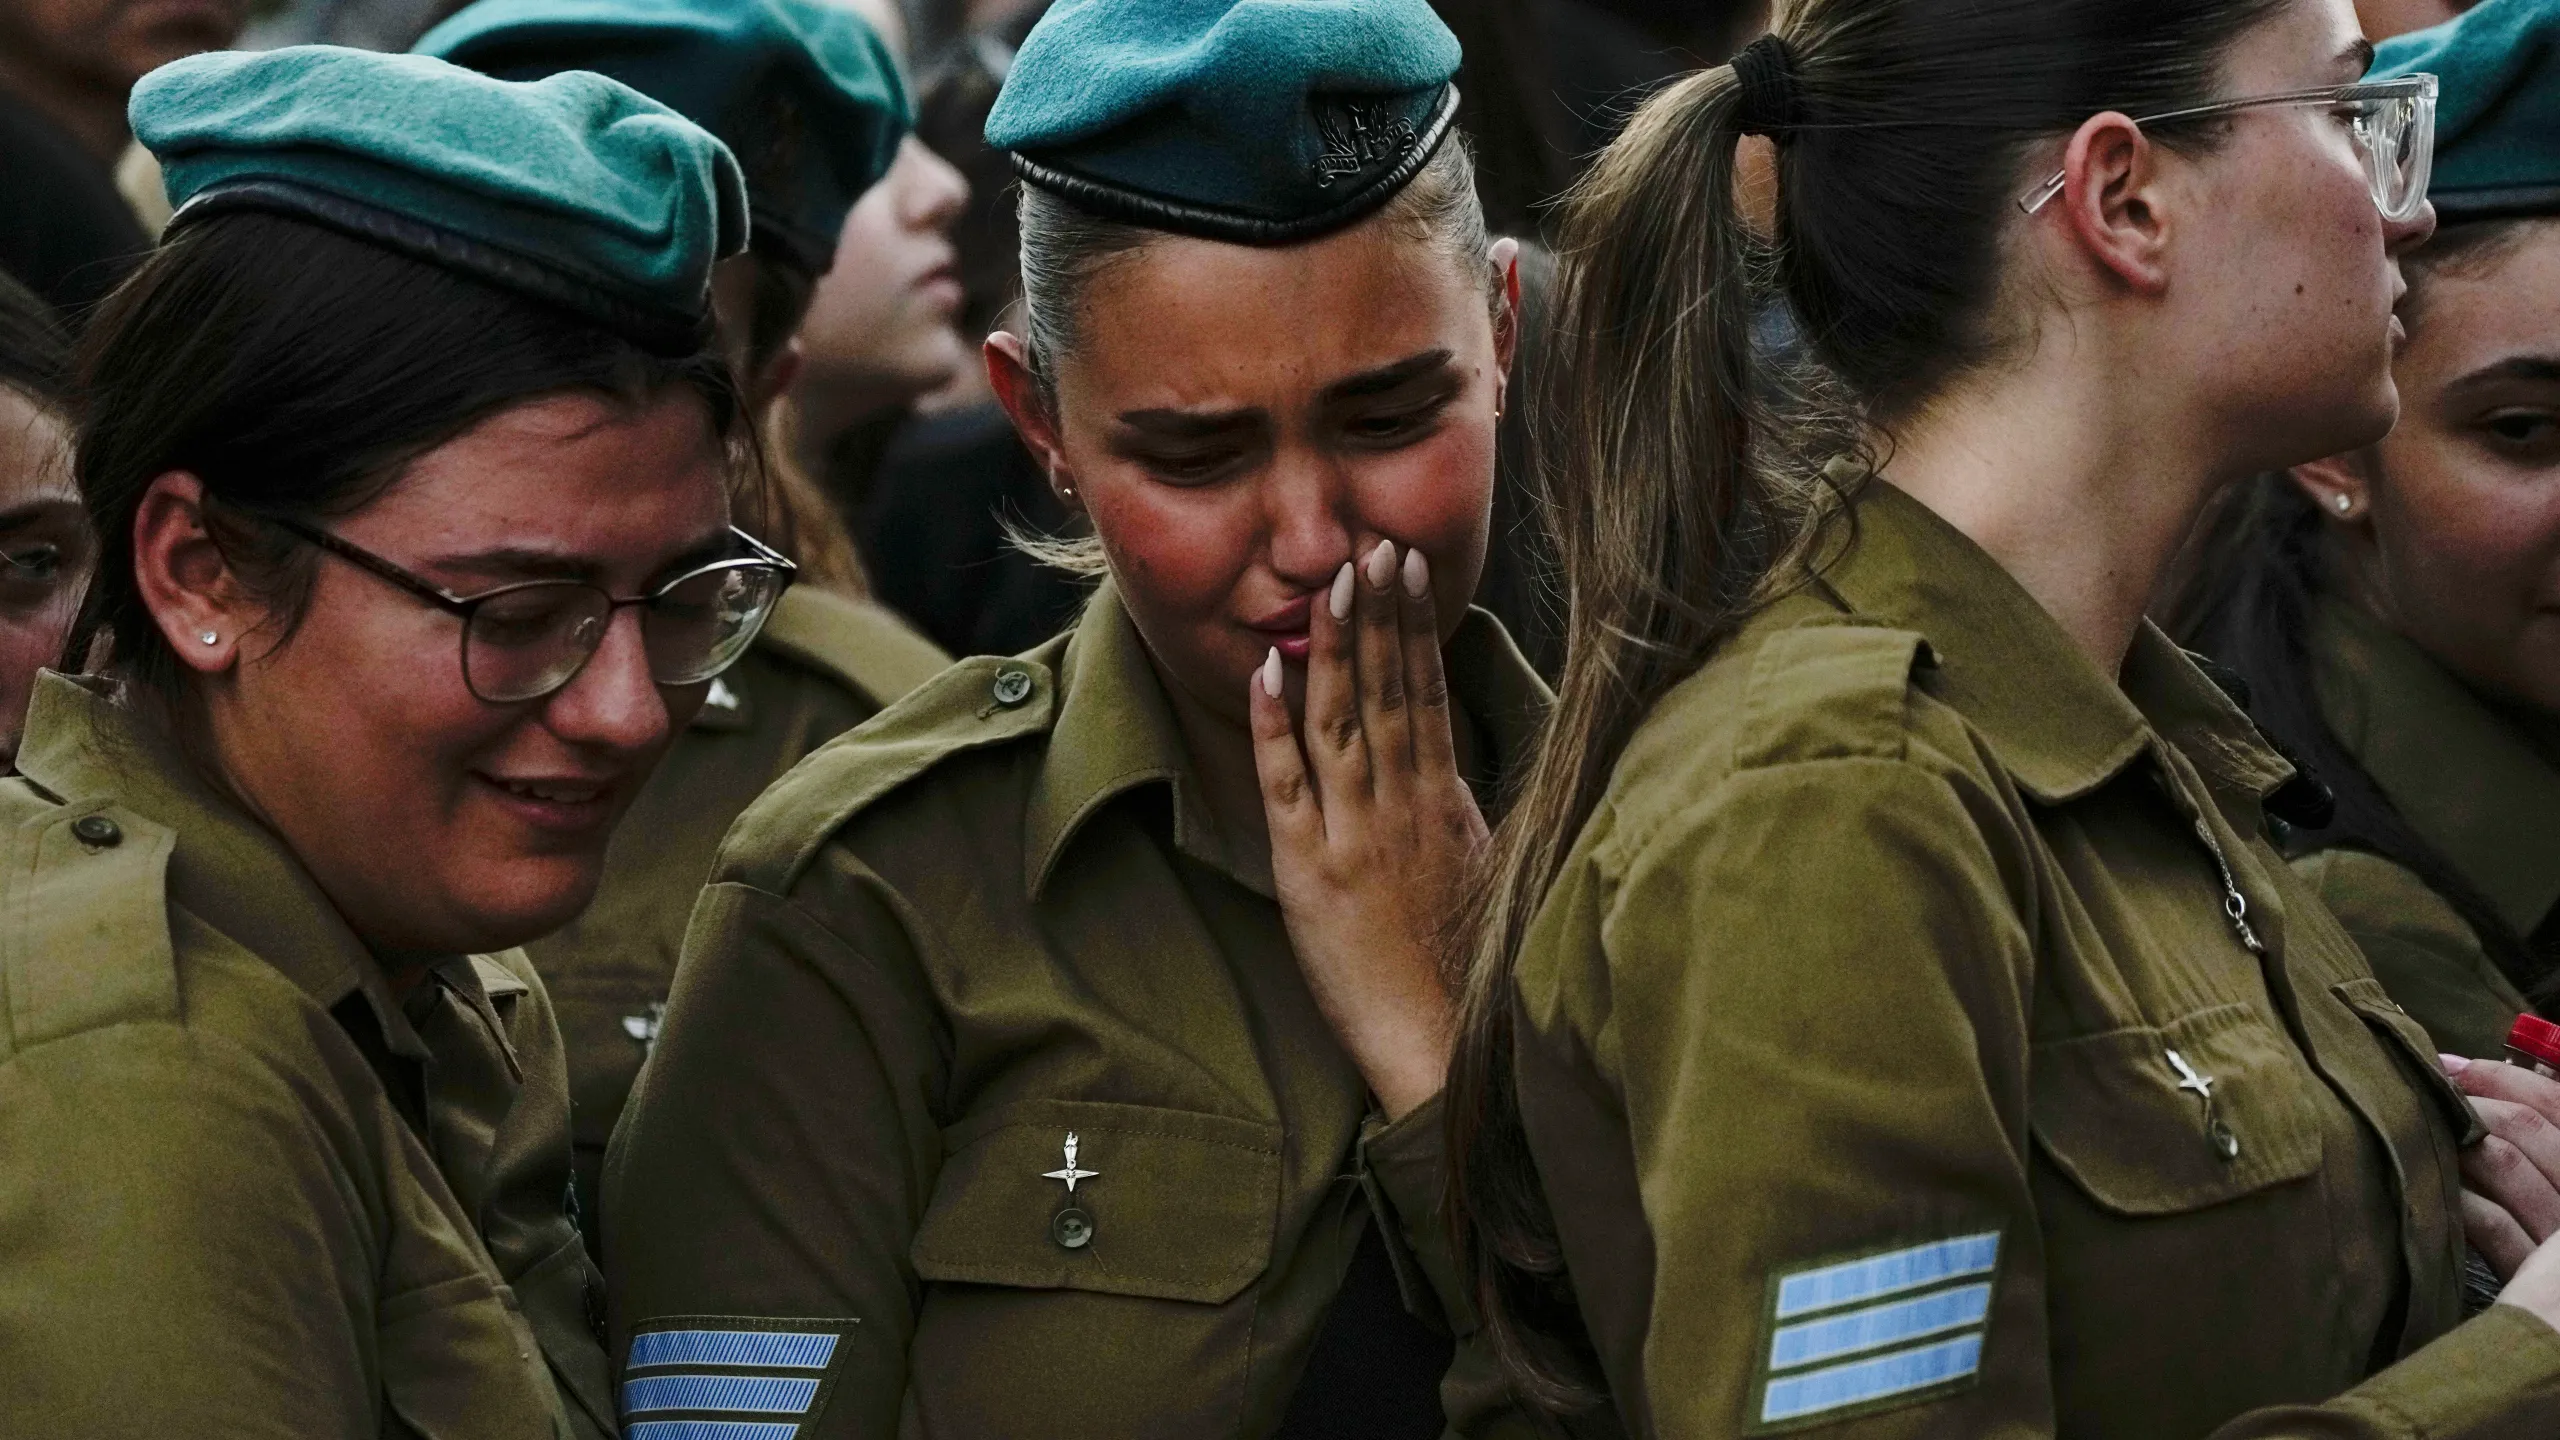 गाजा में सात हफ्ते तक रहने के बाद इजराइल पहुंचे रिहा किए गए बंधक: इजराइली सेना